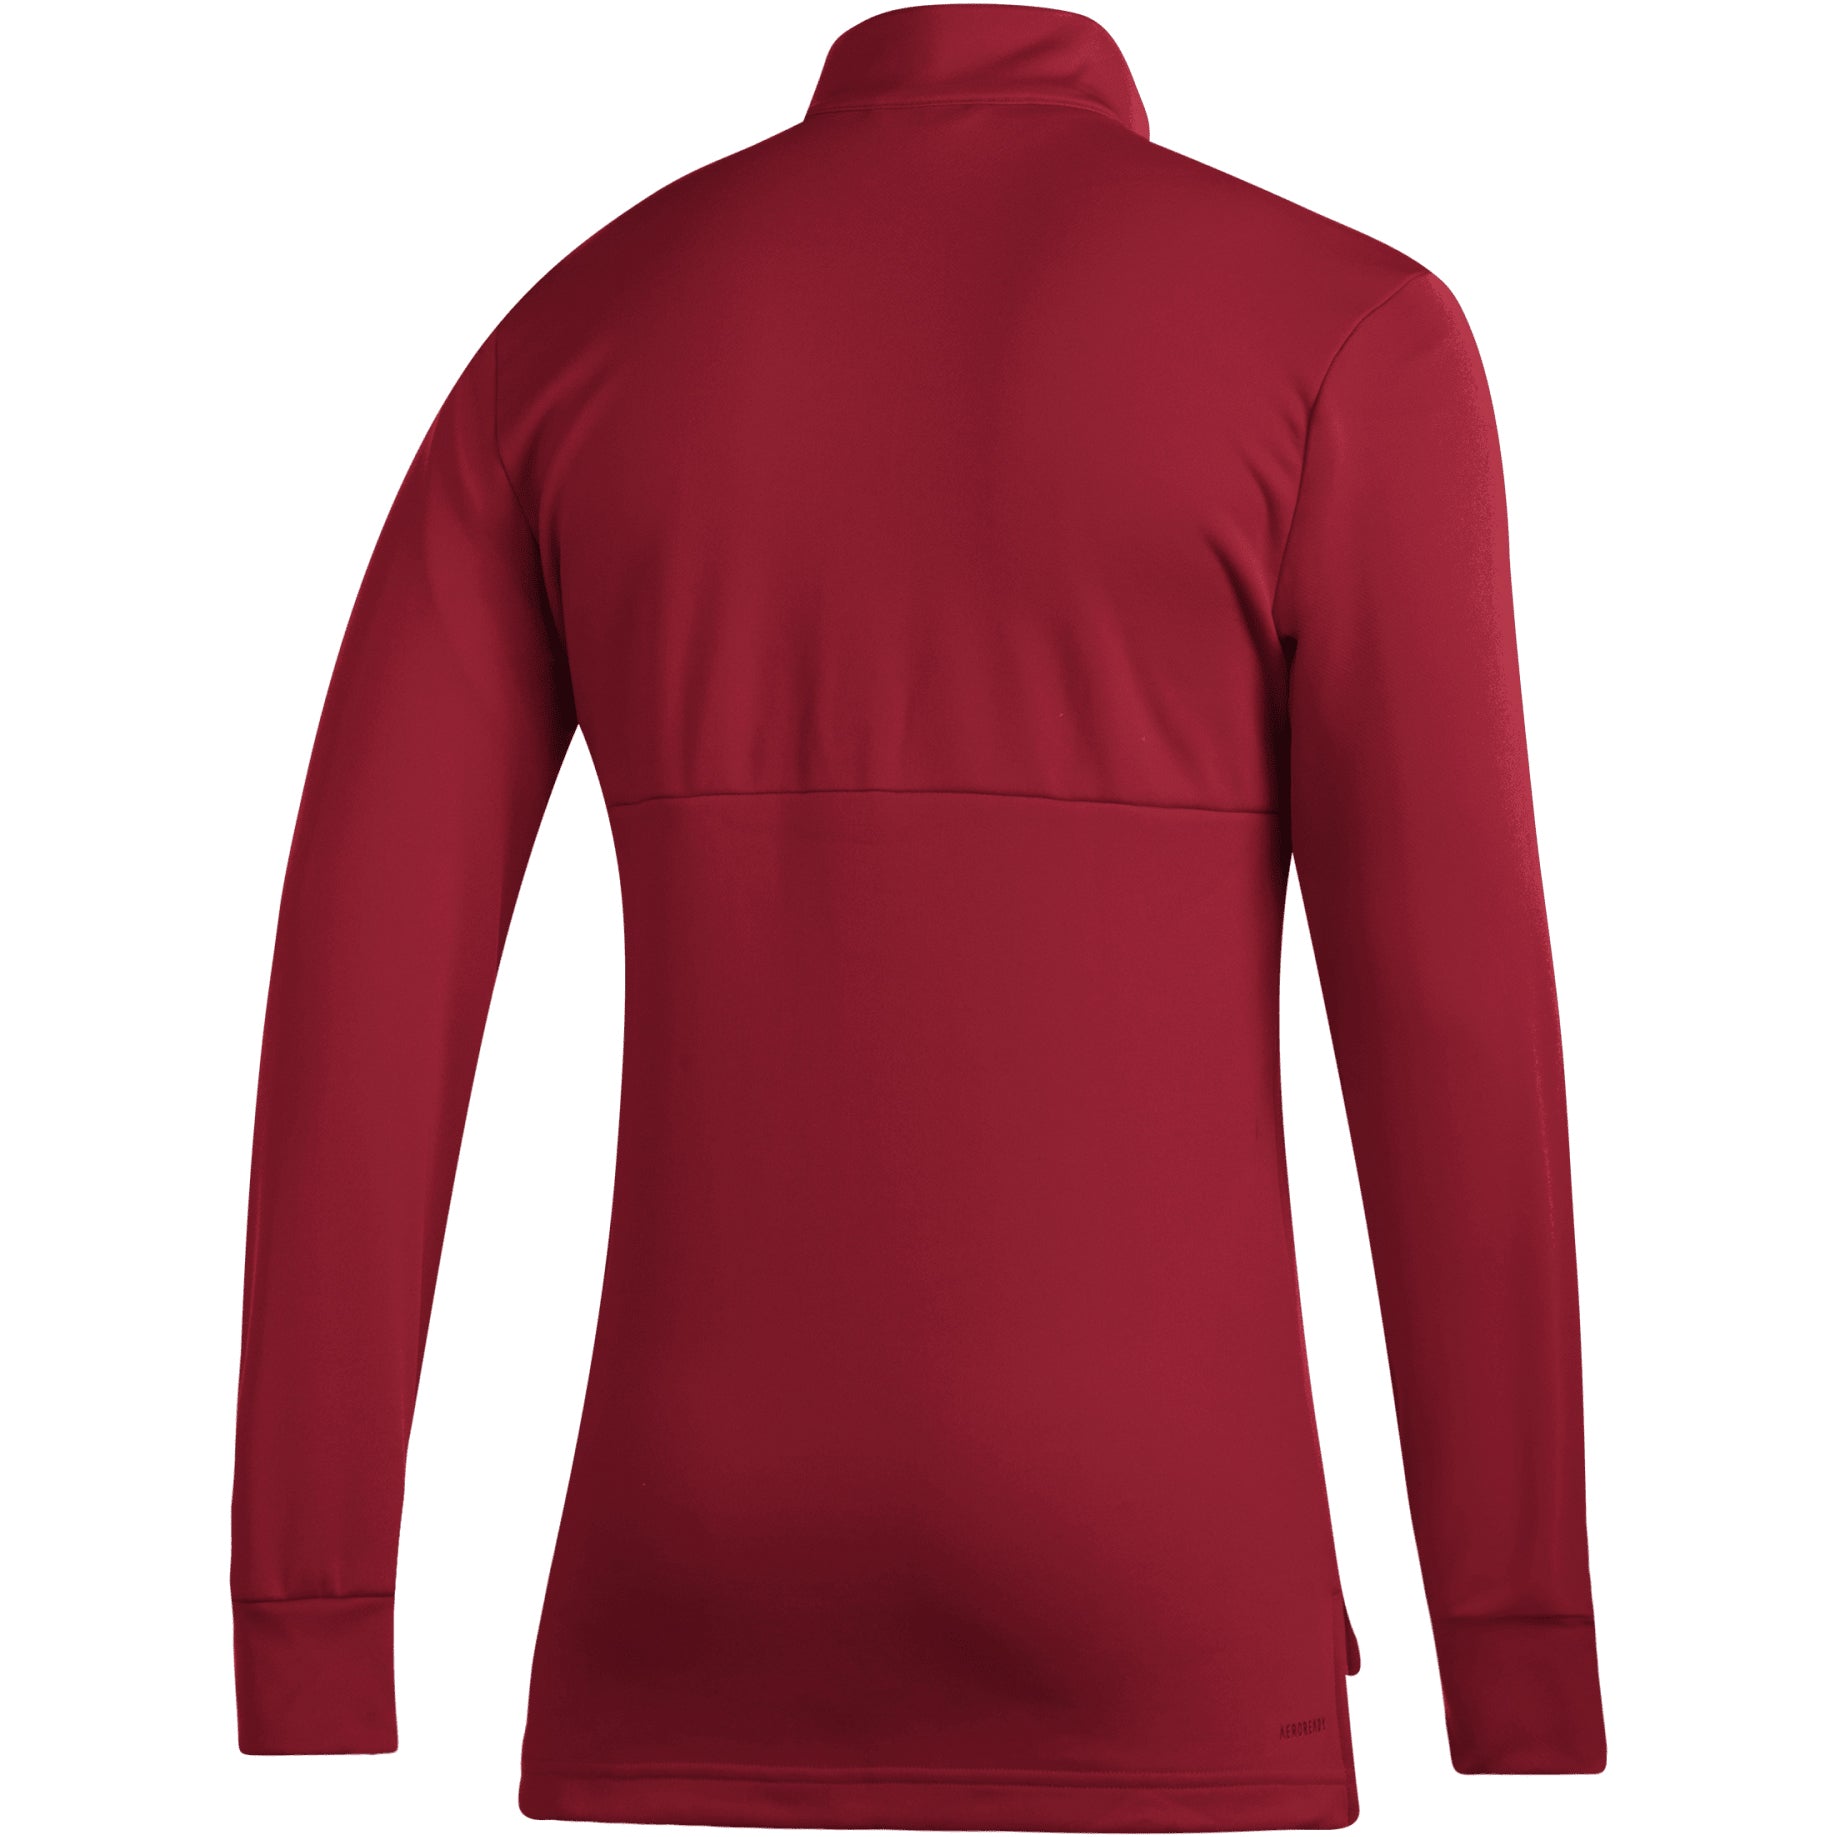 HD ¼ zip sweatshirt - KS Teamwear